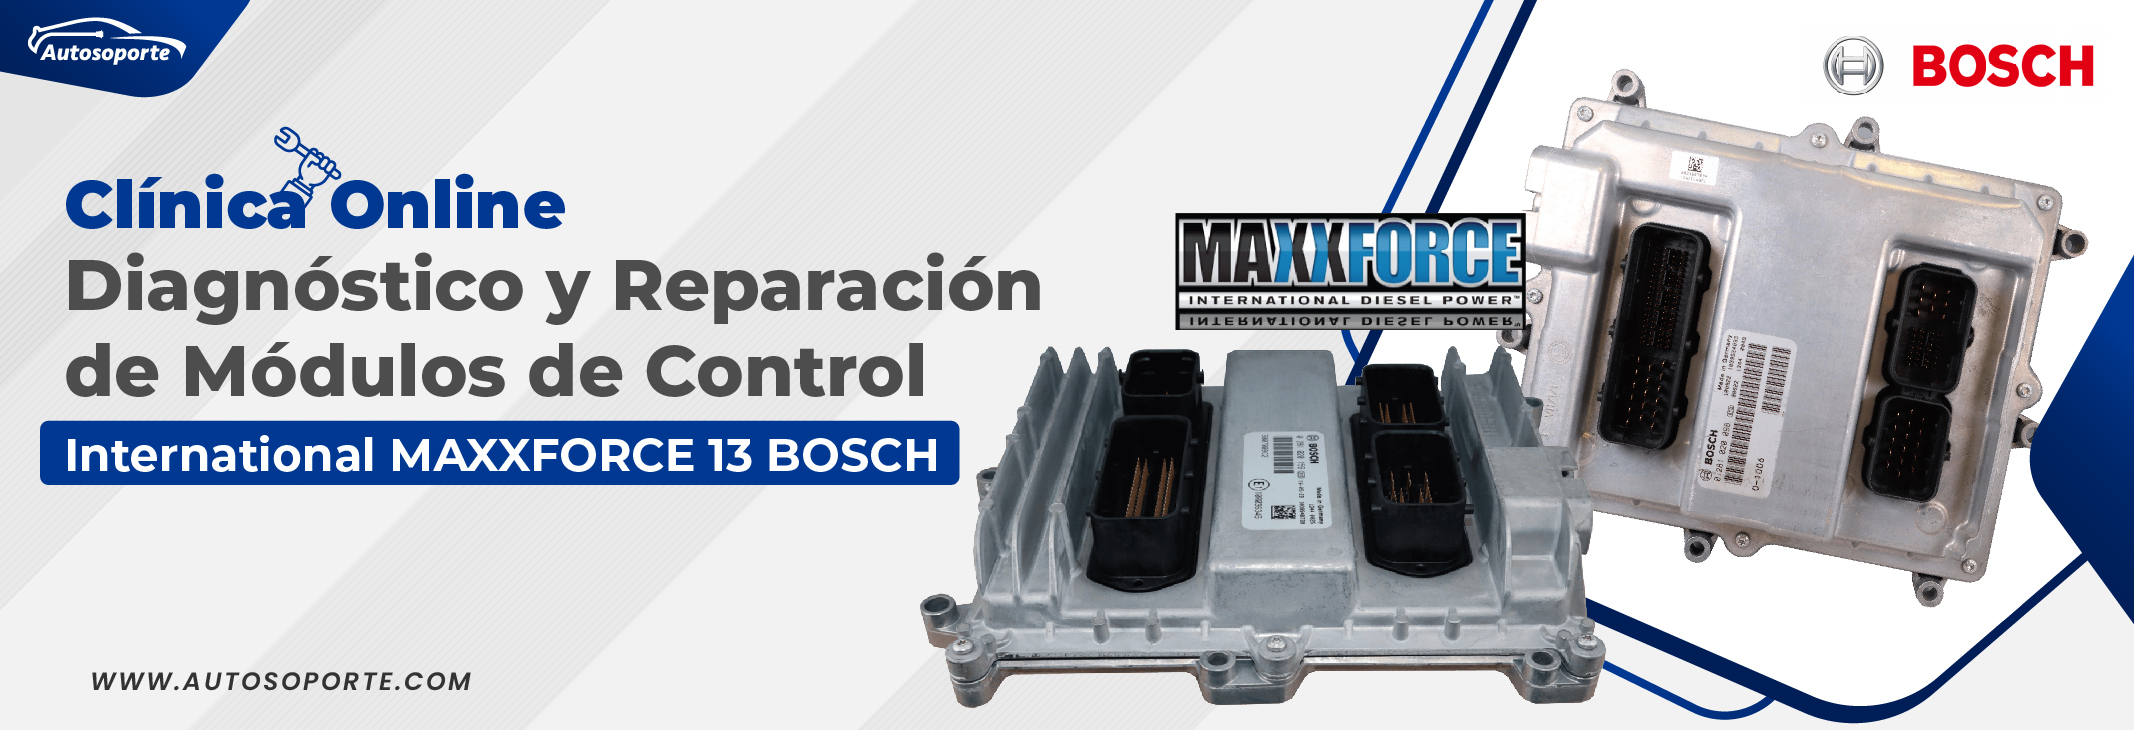 Clinica Online Diagnostico y Reparacion de Modulos de Control International Maxxforce 13 Bosch